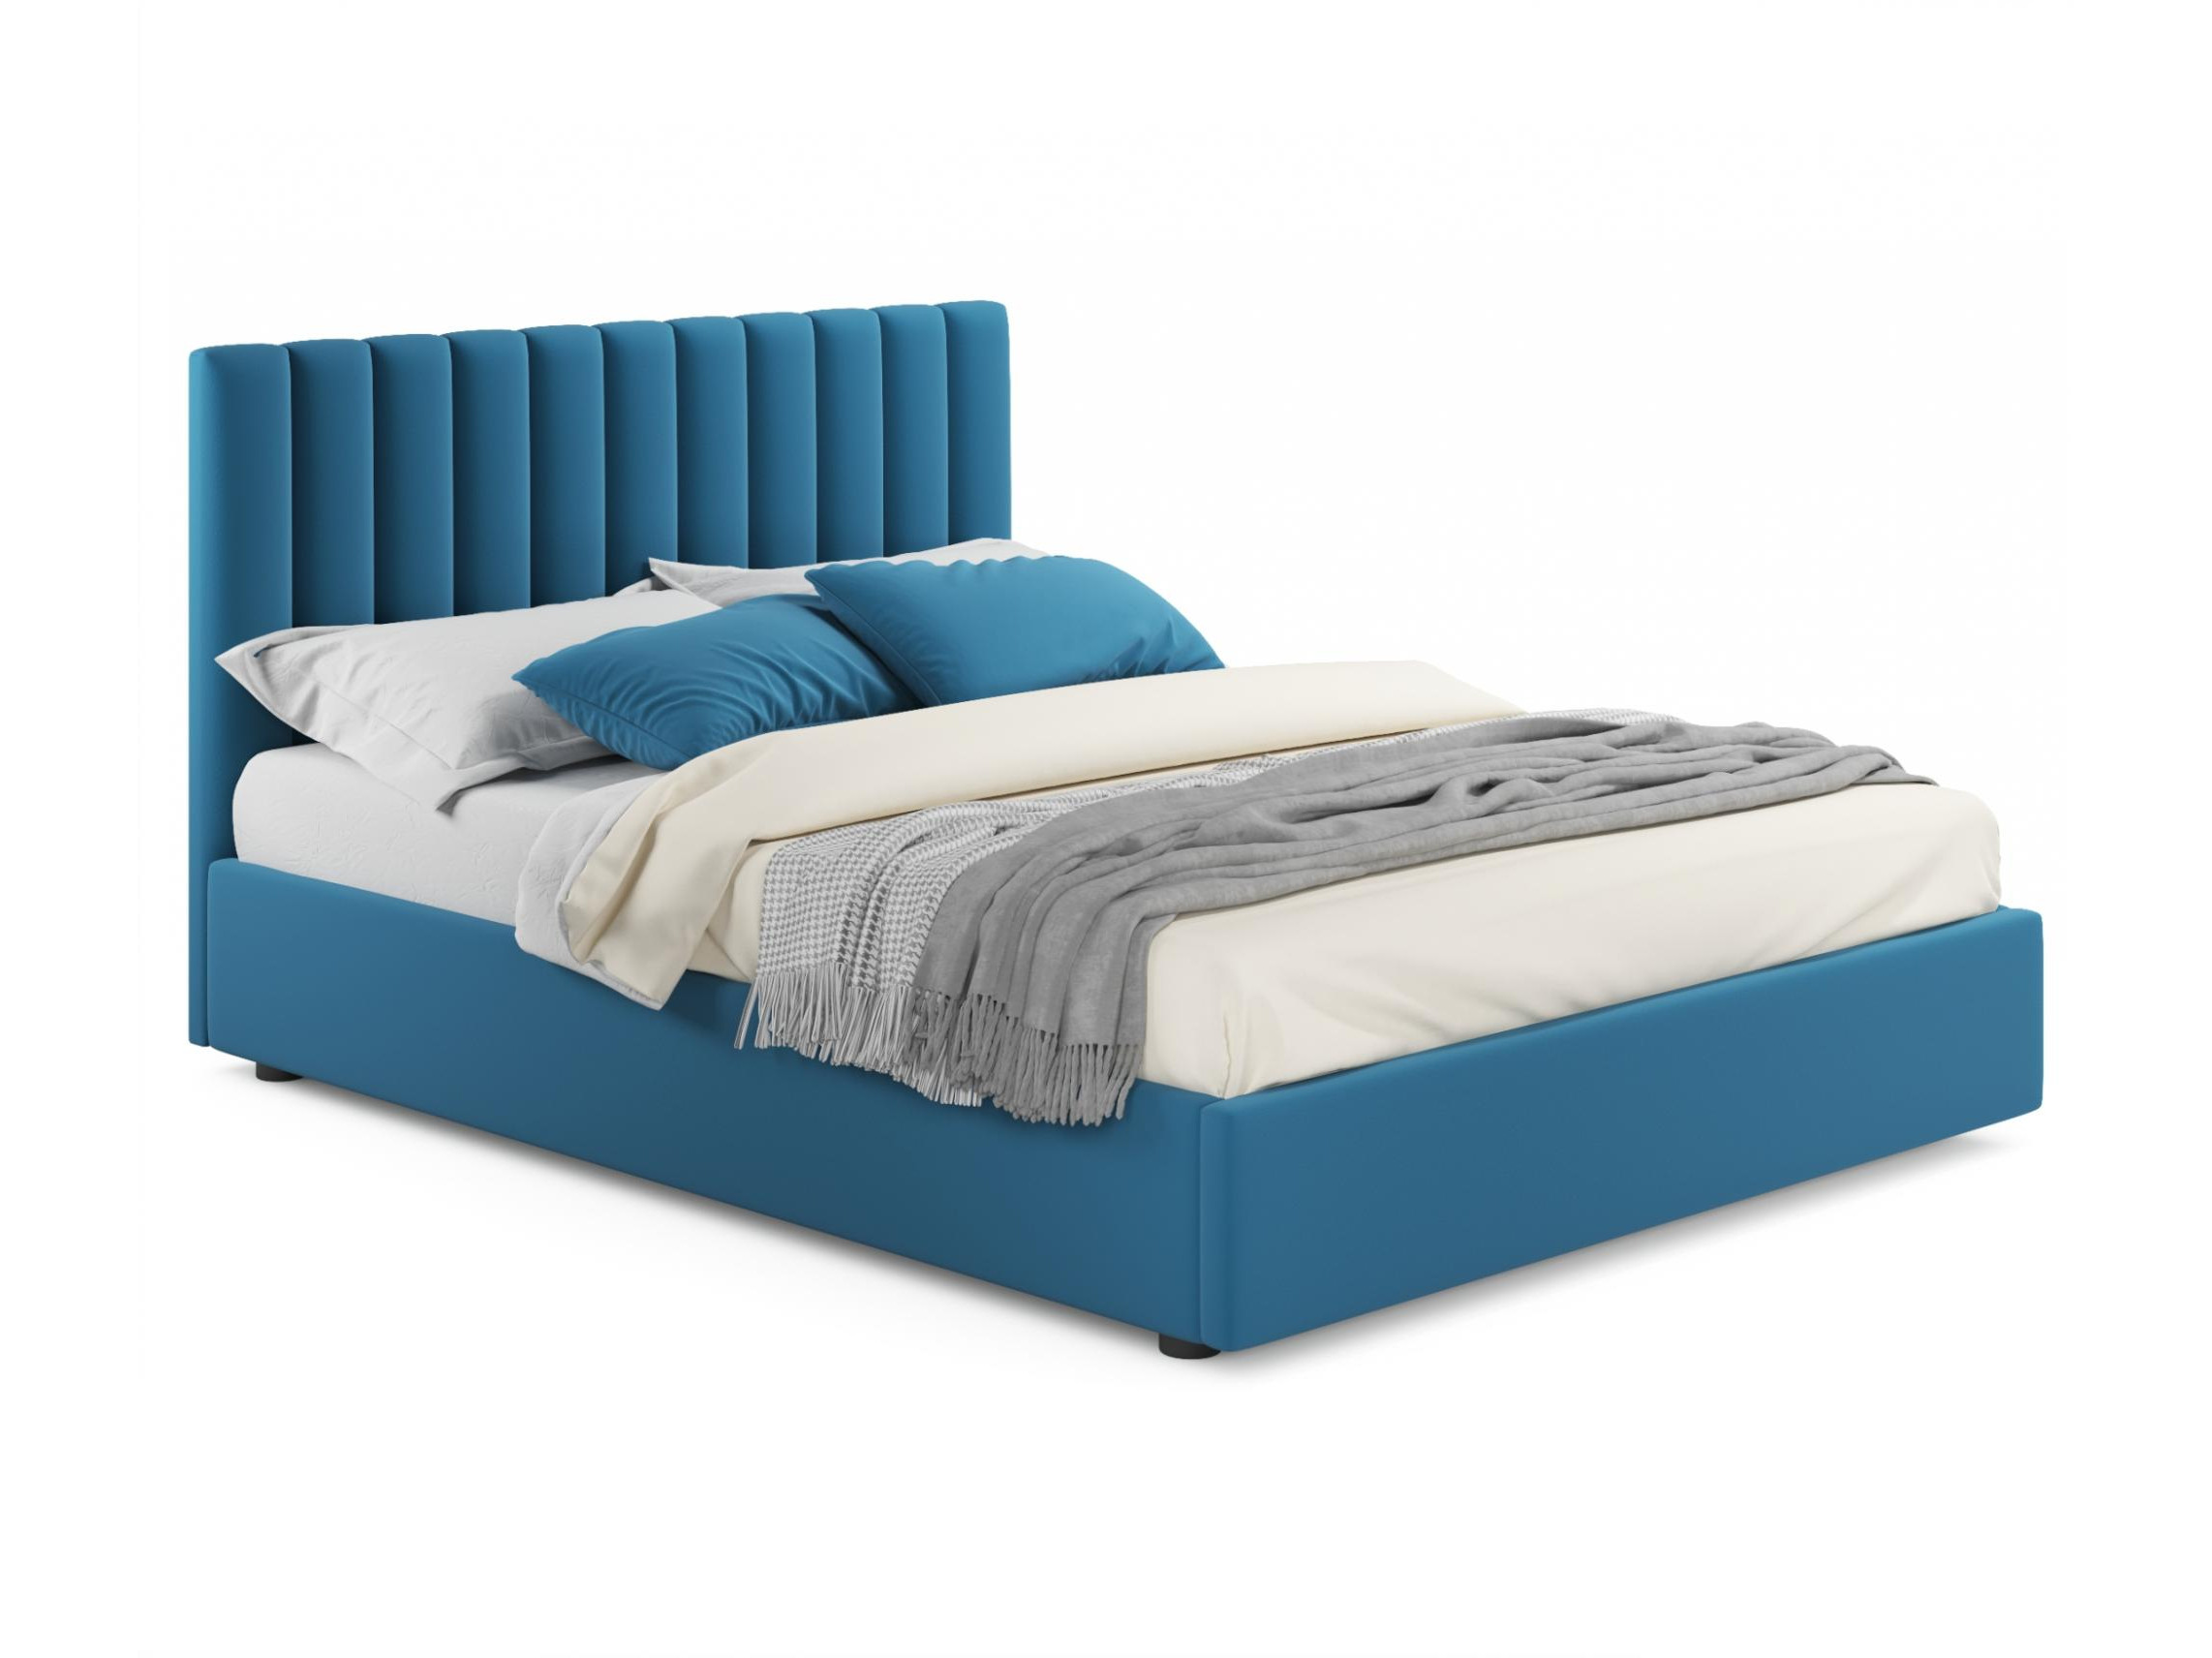 мягкая кровать olivia 1800 синяя с подъемным механизмом синий синий велюр дсп Мягкая кровать Olivia 1600 синяя с подъемным механизмом синий, Синий, Велюр, ДСП